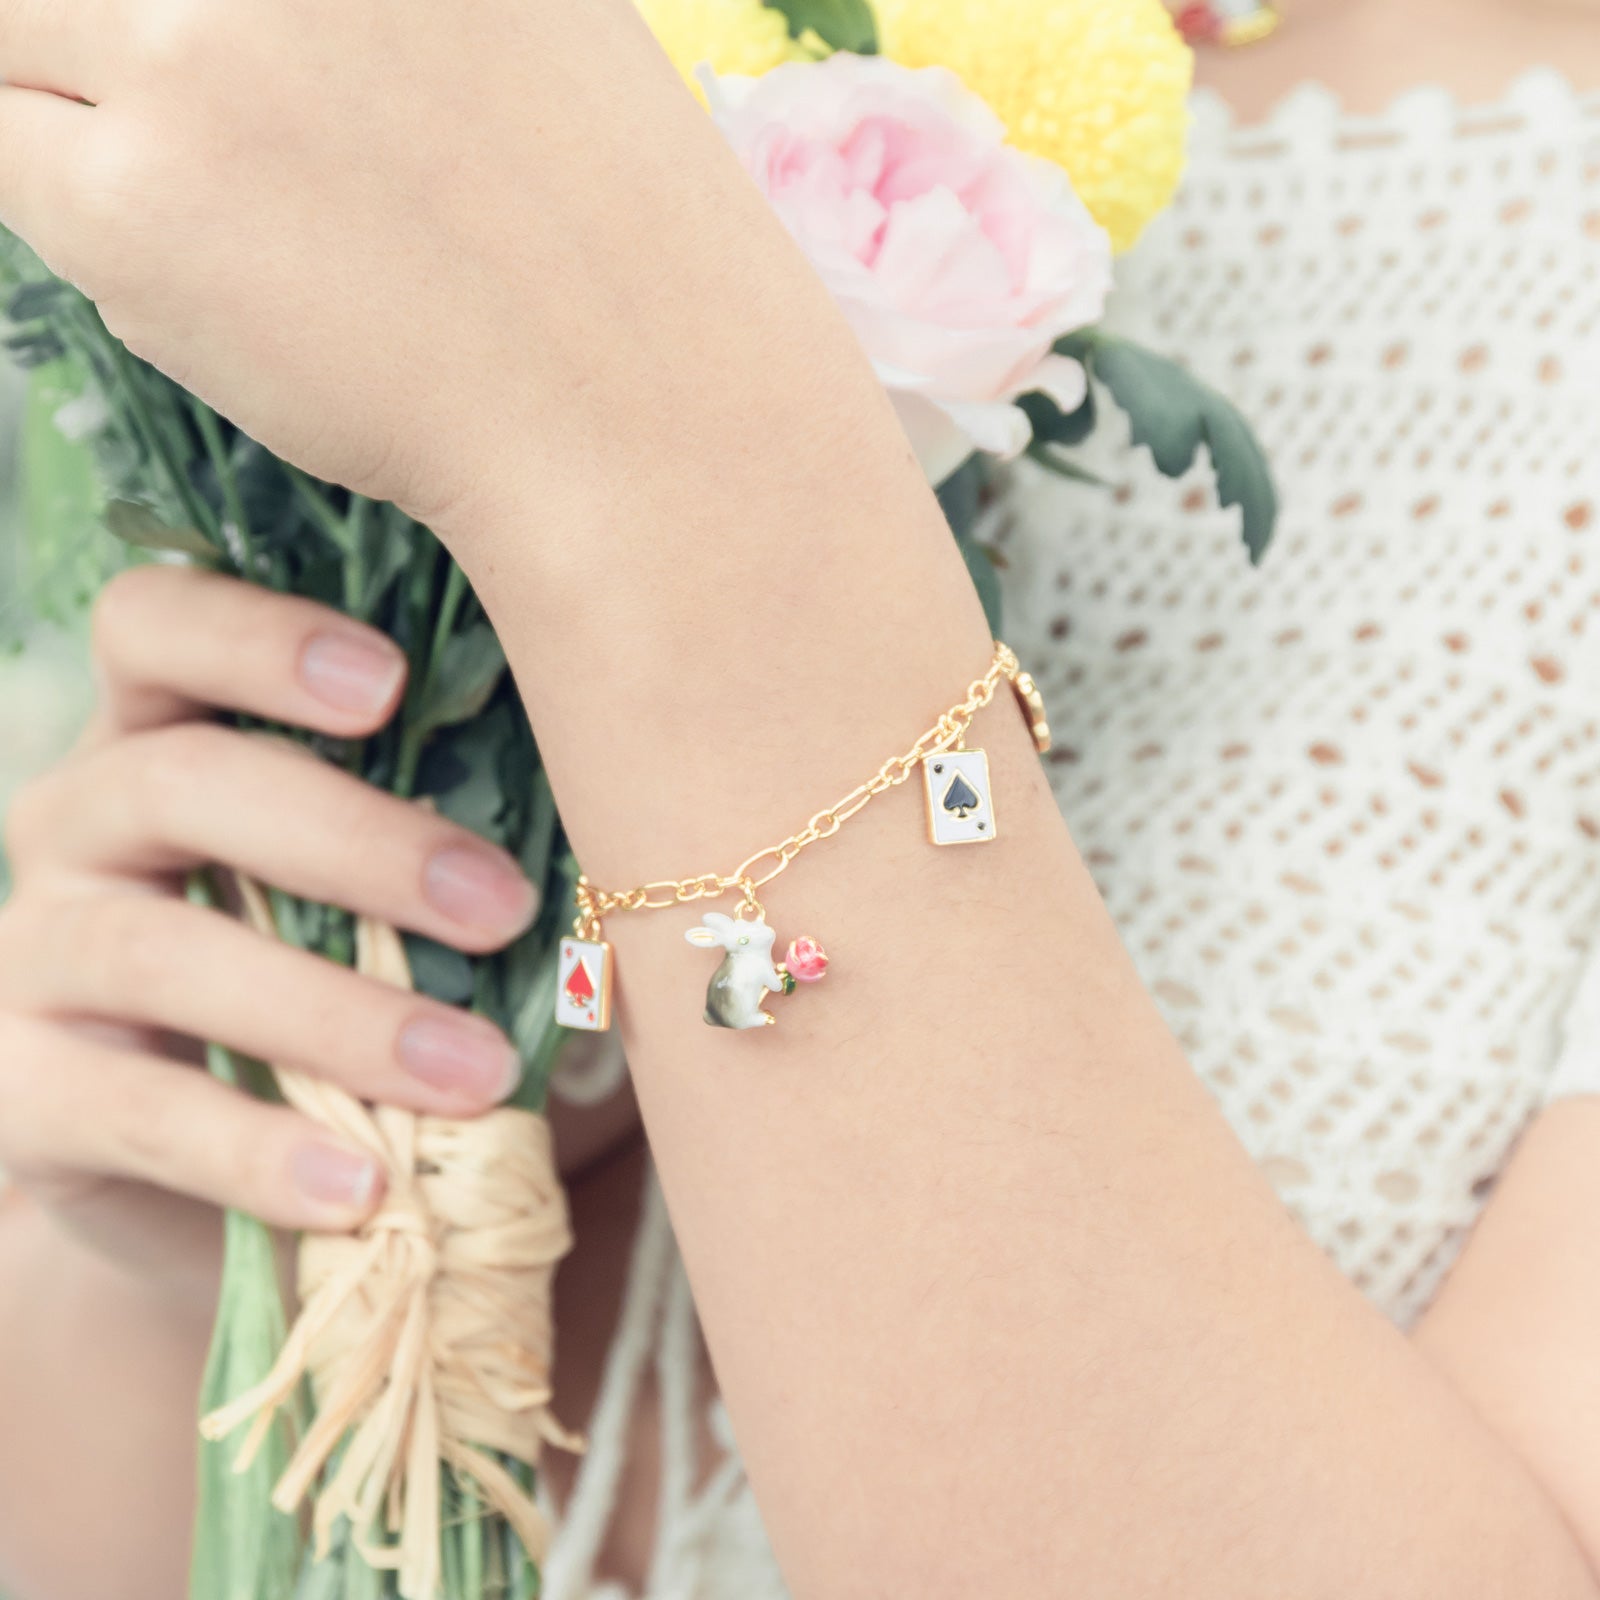 Secret Garden Rabbit Bracelet Jewelry for Women